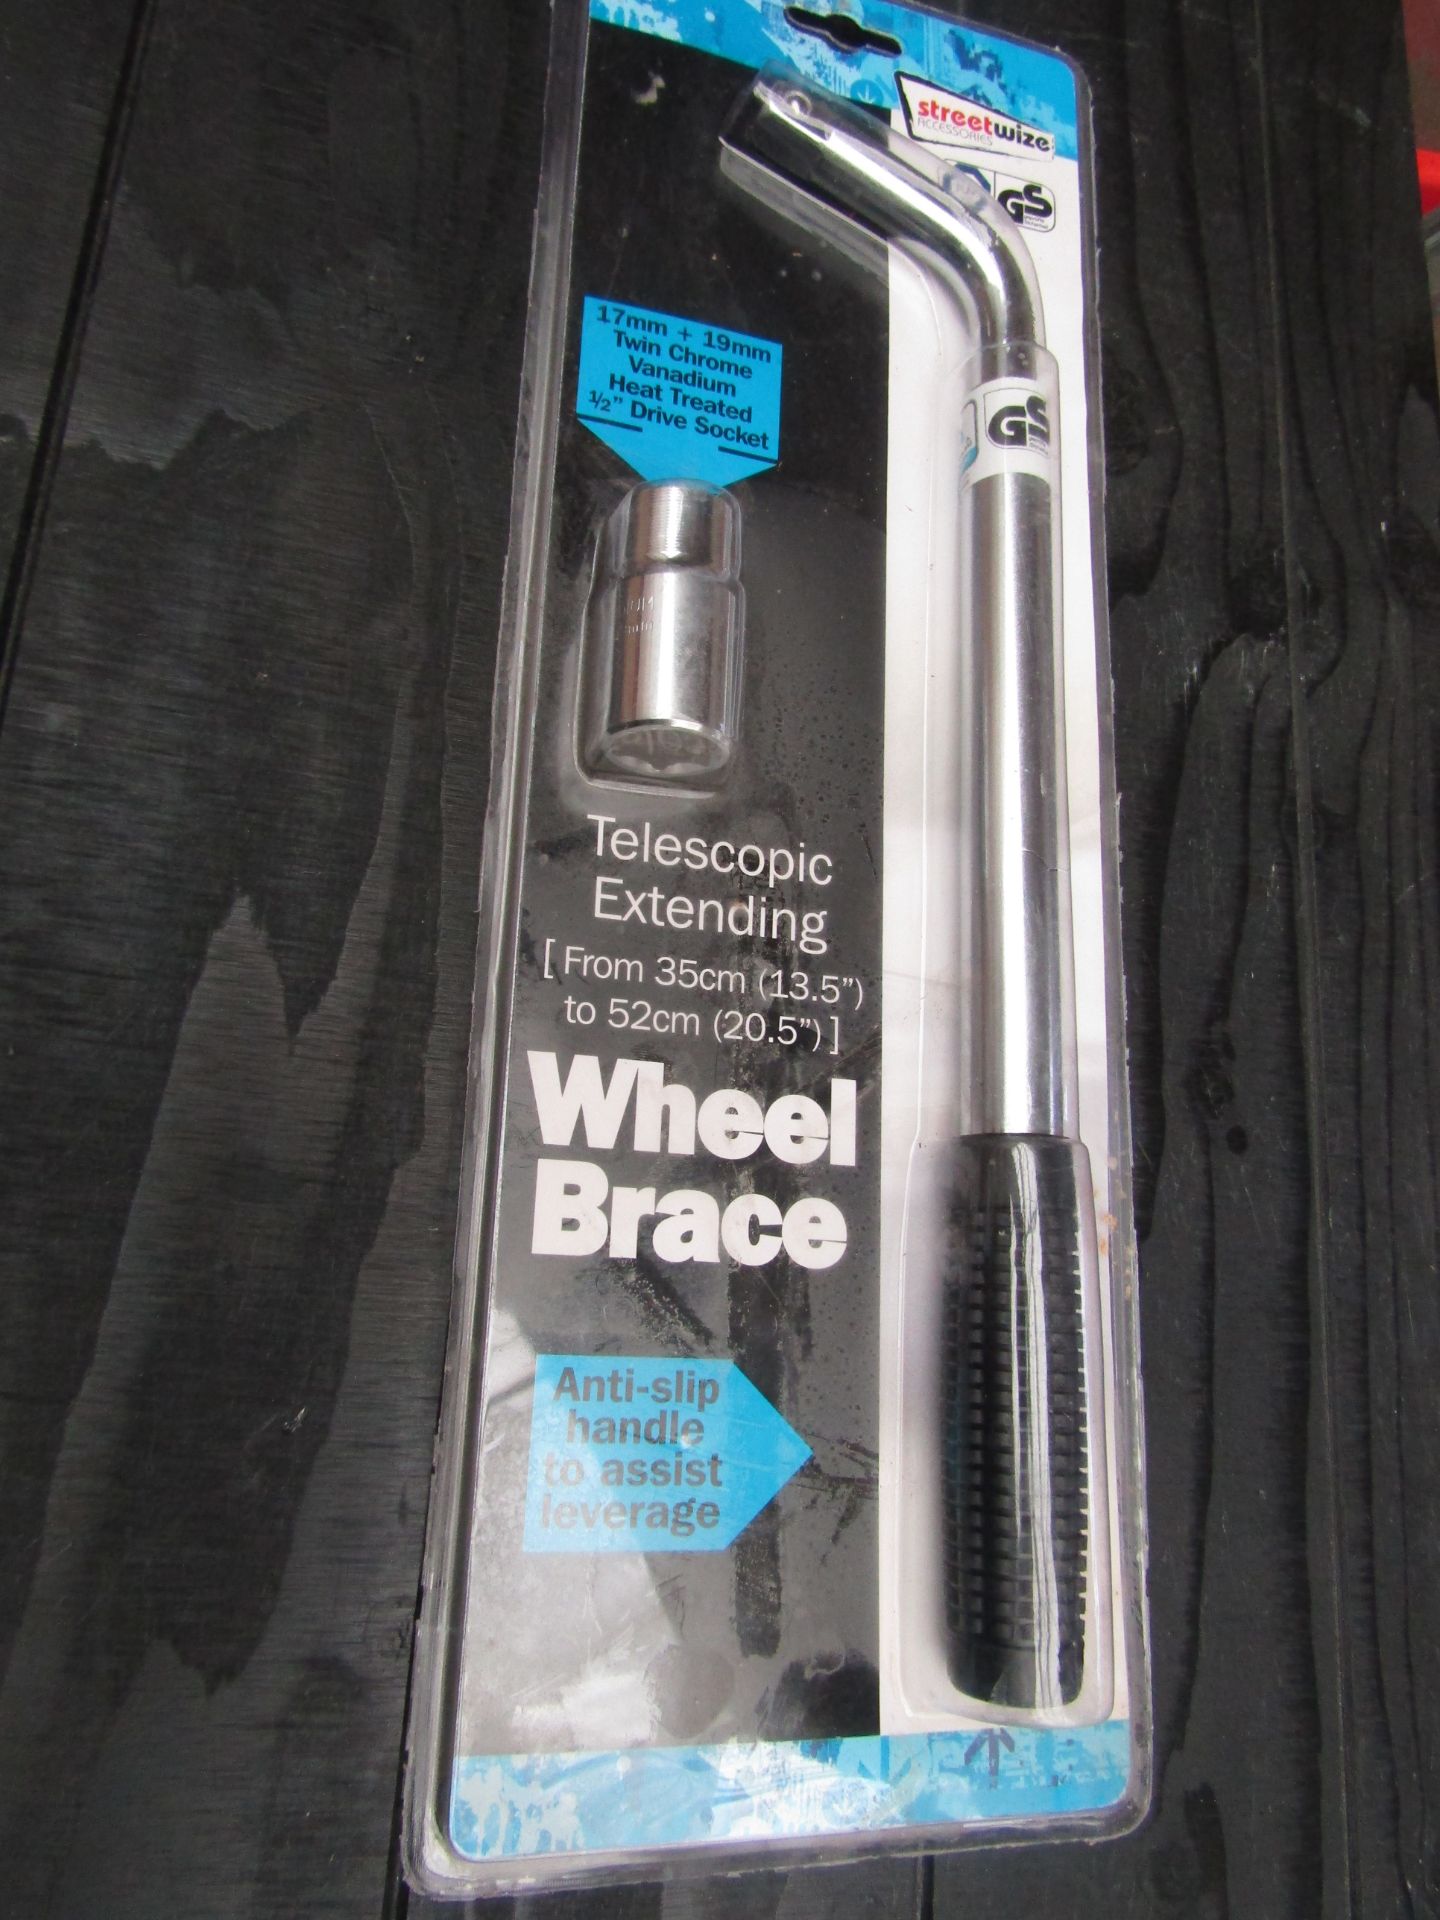 Streetwise Telescopic Wheel Brace, still sealed in packaging